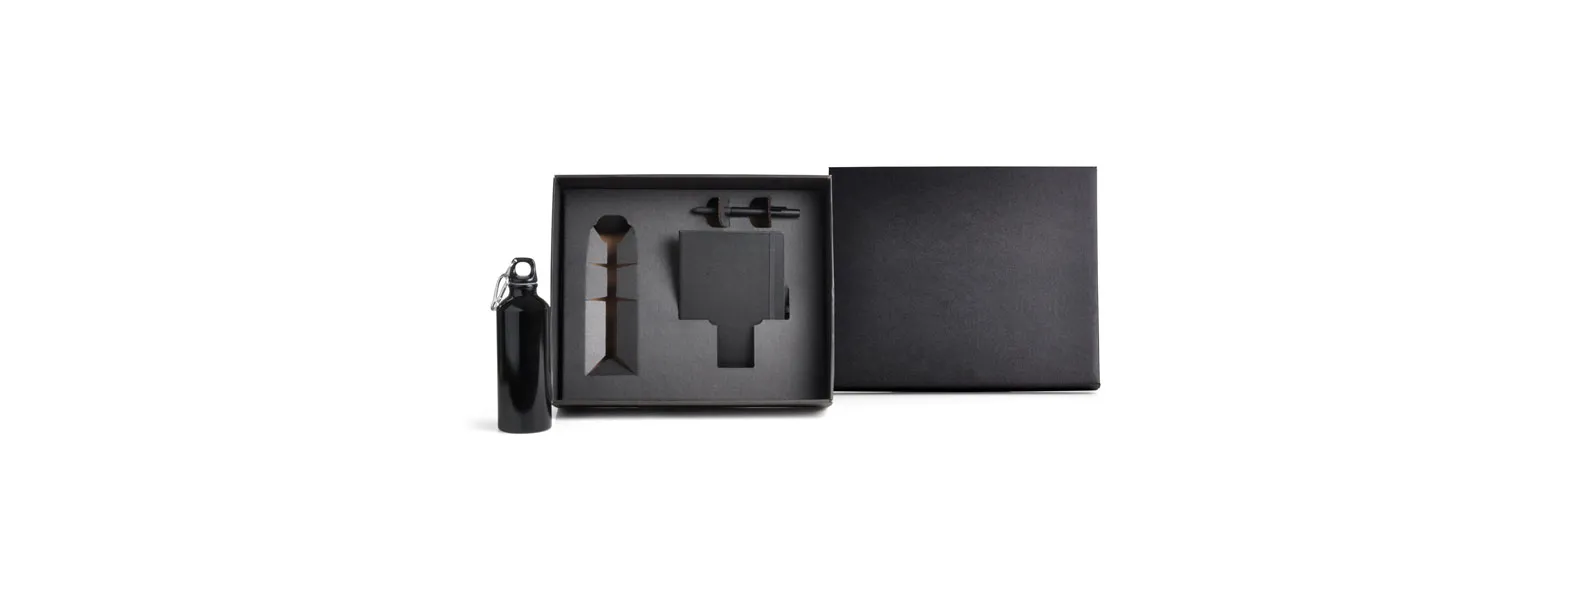 Kit squeeze, caderno e caneta. Composto por squeeze preto em alumínio revestido com verniz; caderno para anotações preto com capa dura e caneta esferográfica em ABS preta.